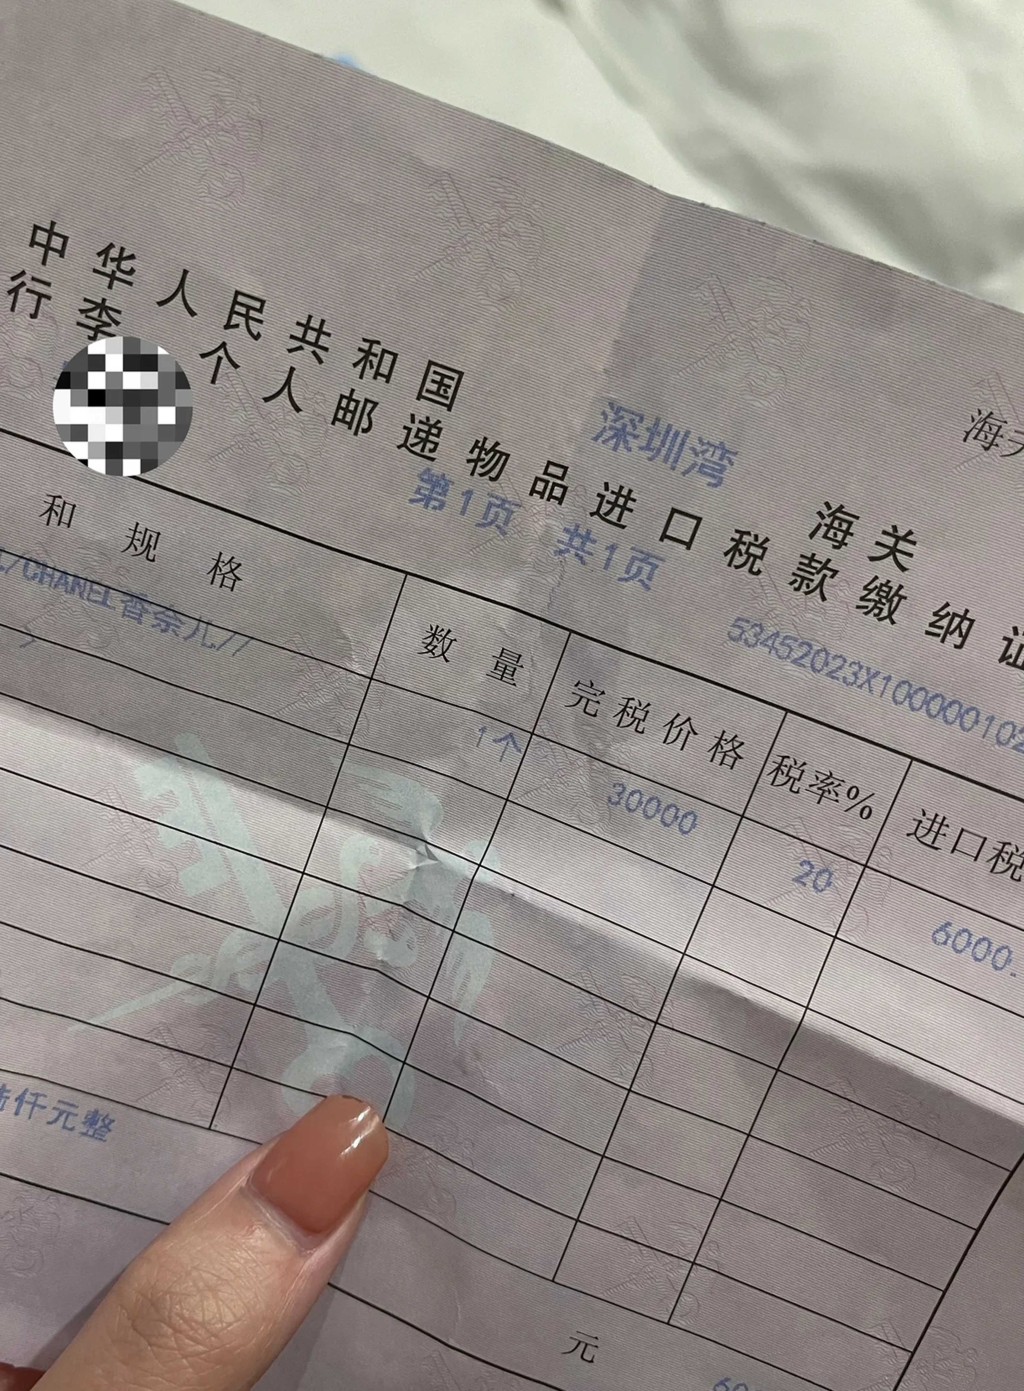 有女士在本港購買了名牌手袋，被深圳海關人員發現，需繳稅6000元人民幣。 網上圖片